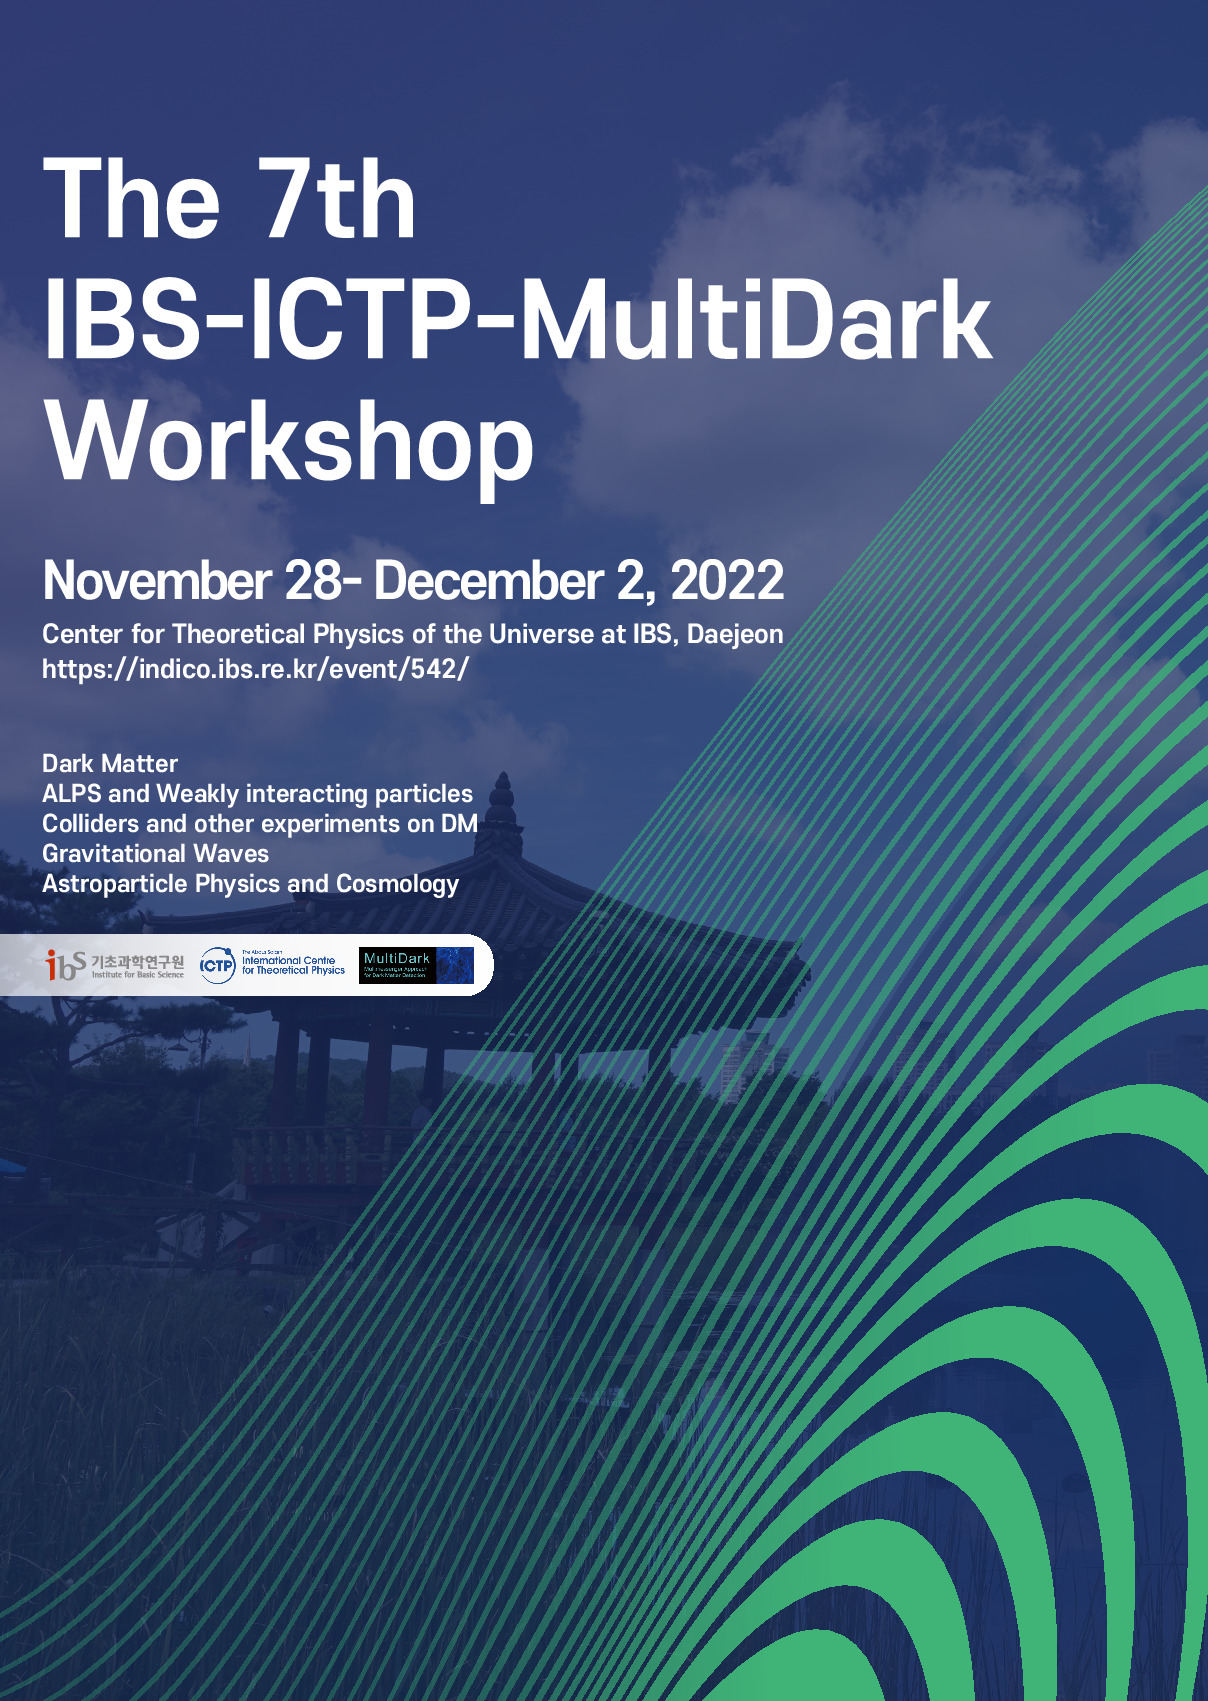 The 7th IBS-ICTP-MultiDark Workshop